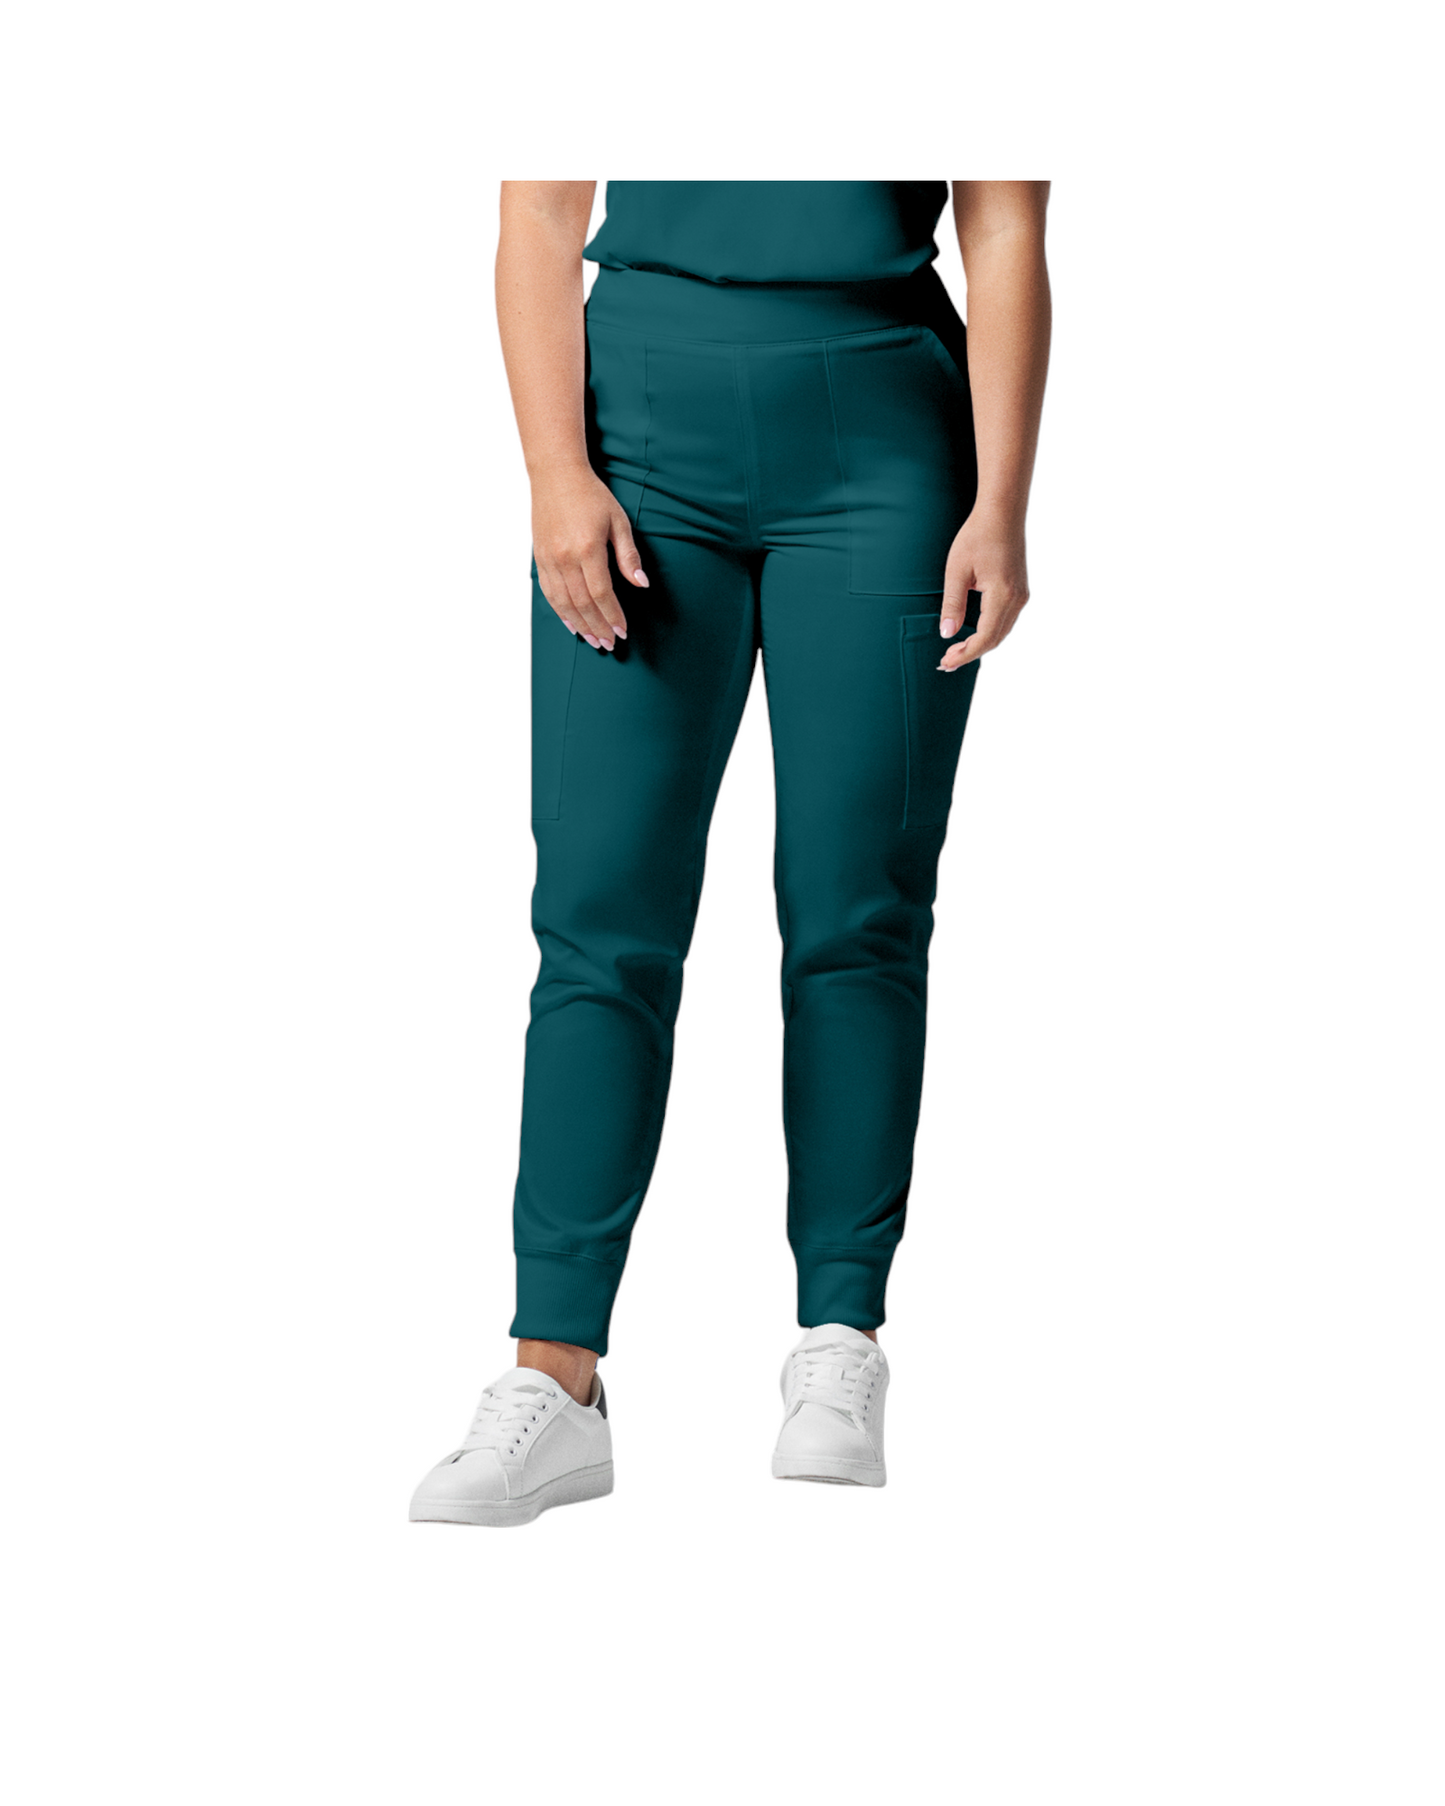 Pantalon de style jogger 6 poches pour femmes Landau Proflex #LB406-OS couleur caraïbes